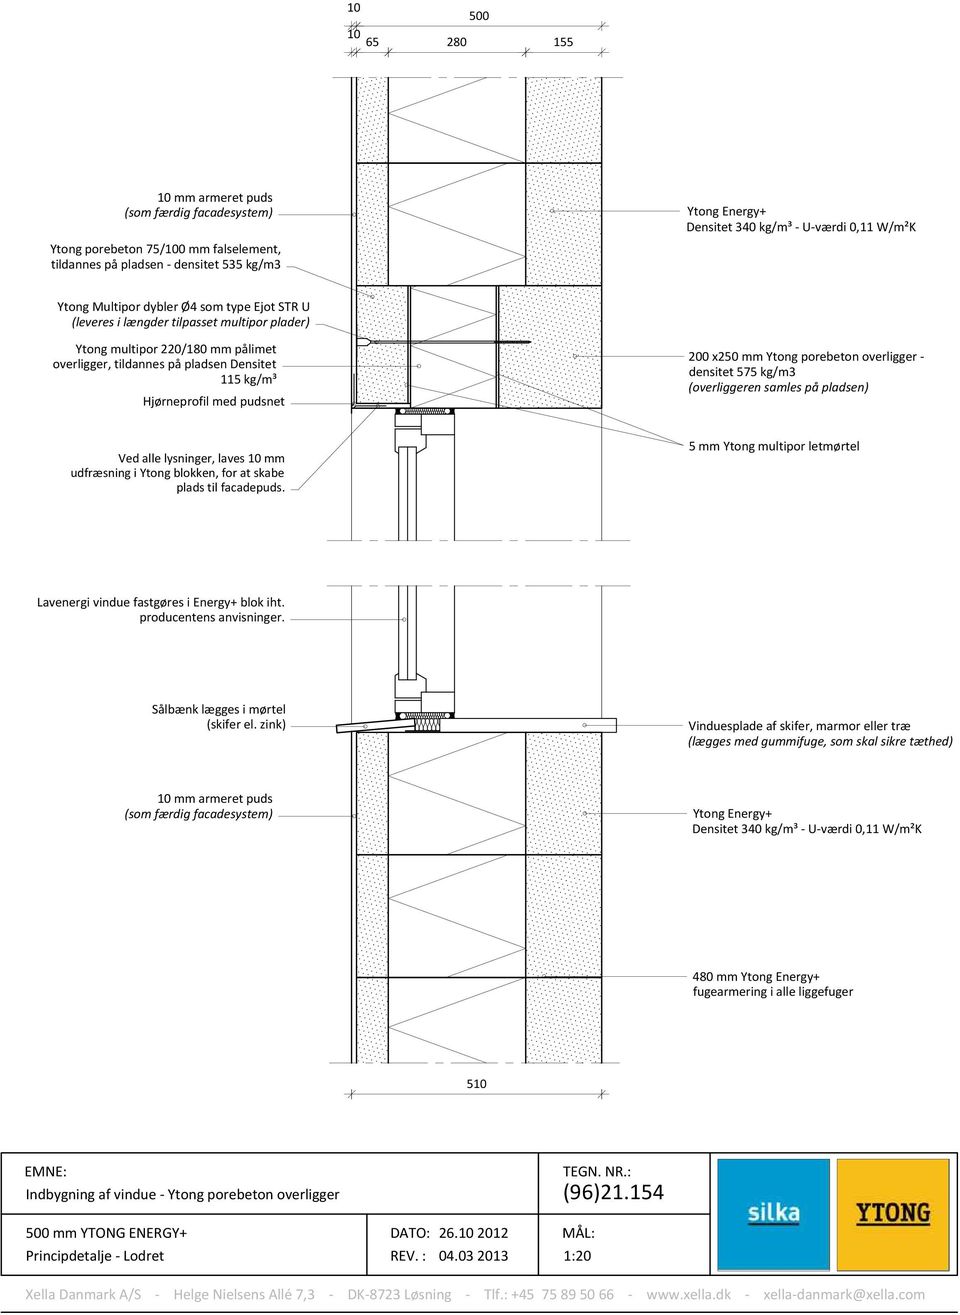 x250 mm Ytong porebeton overligger - densitet 575 kg/m3 (overliggeren samles på pladsen) Ved alle lysninger, laves mm udfræsning i Ytong blokken, for at skabe plads til facadepuds.